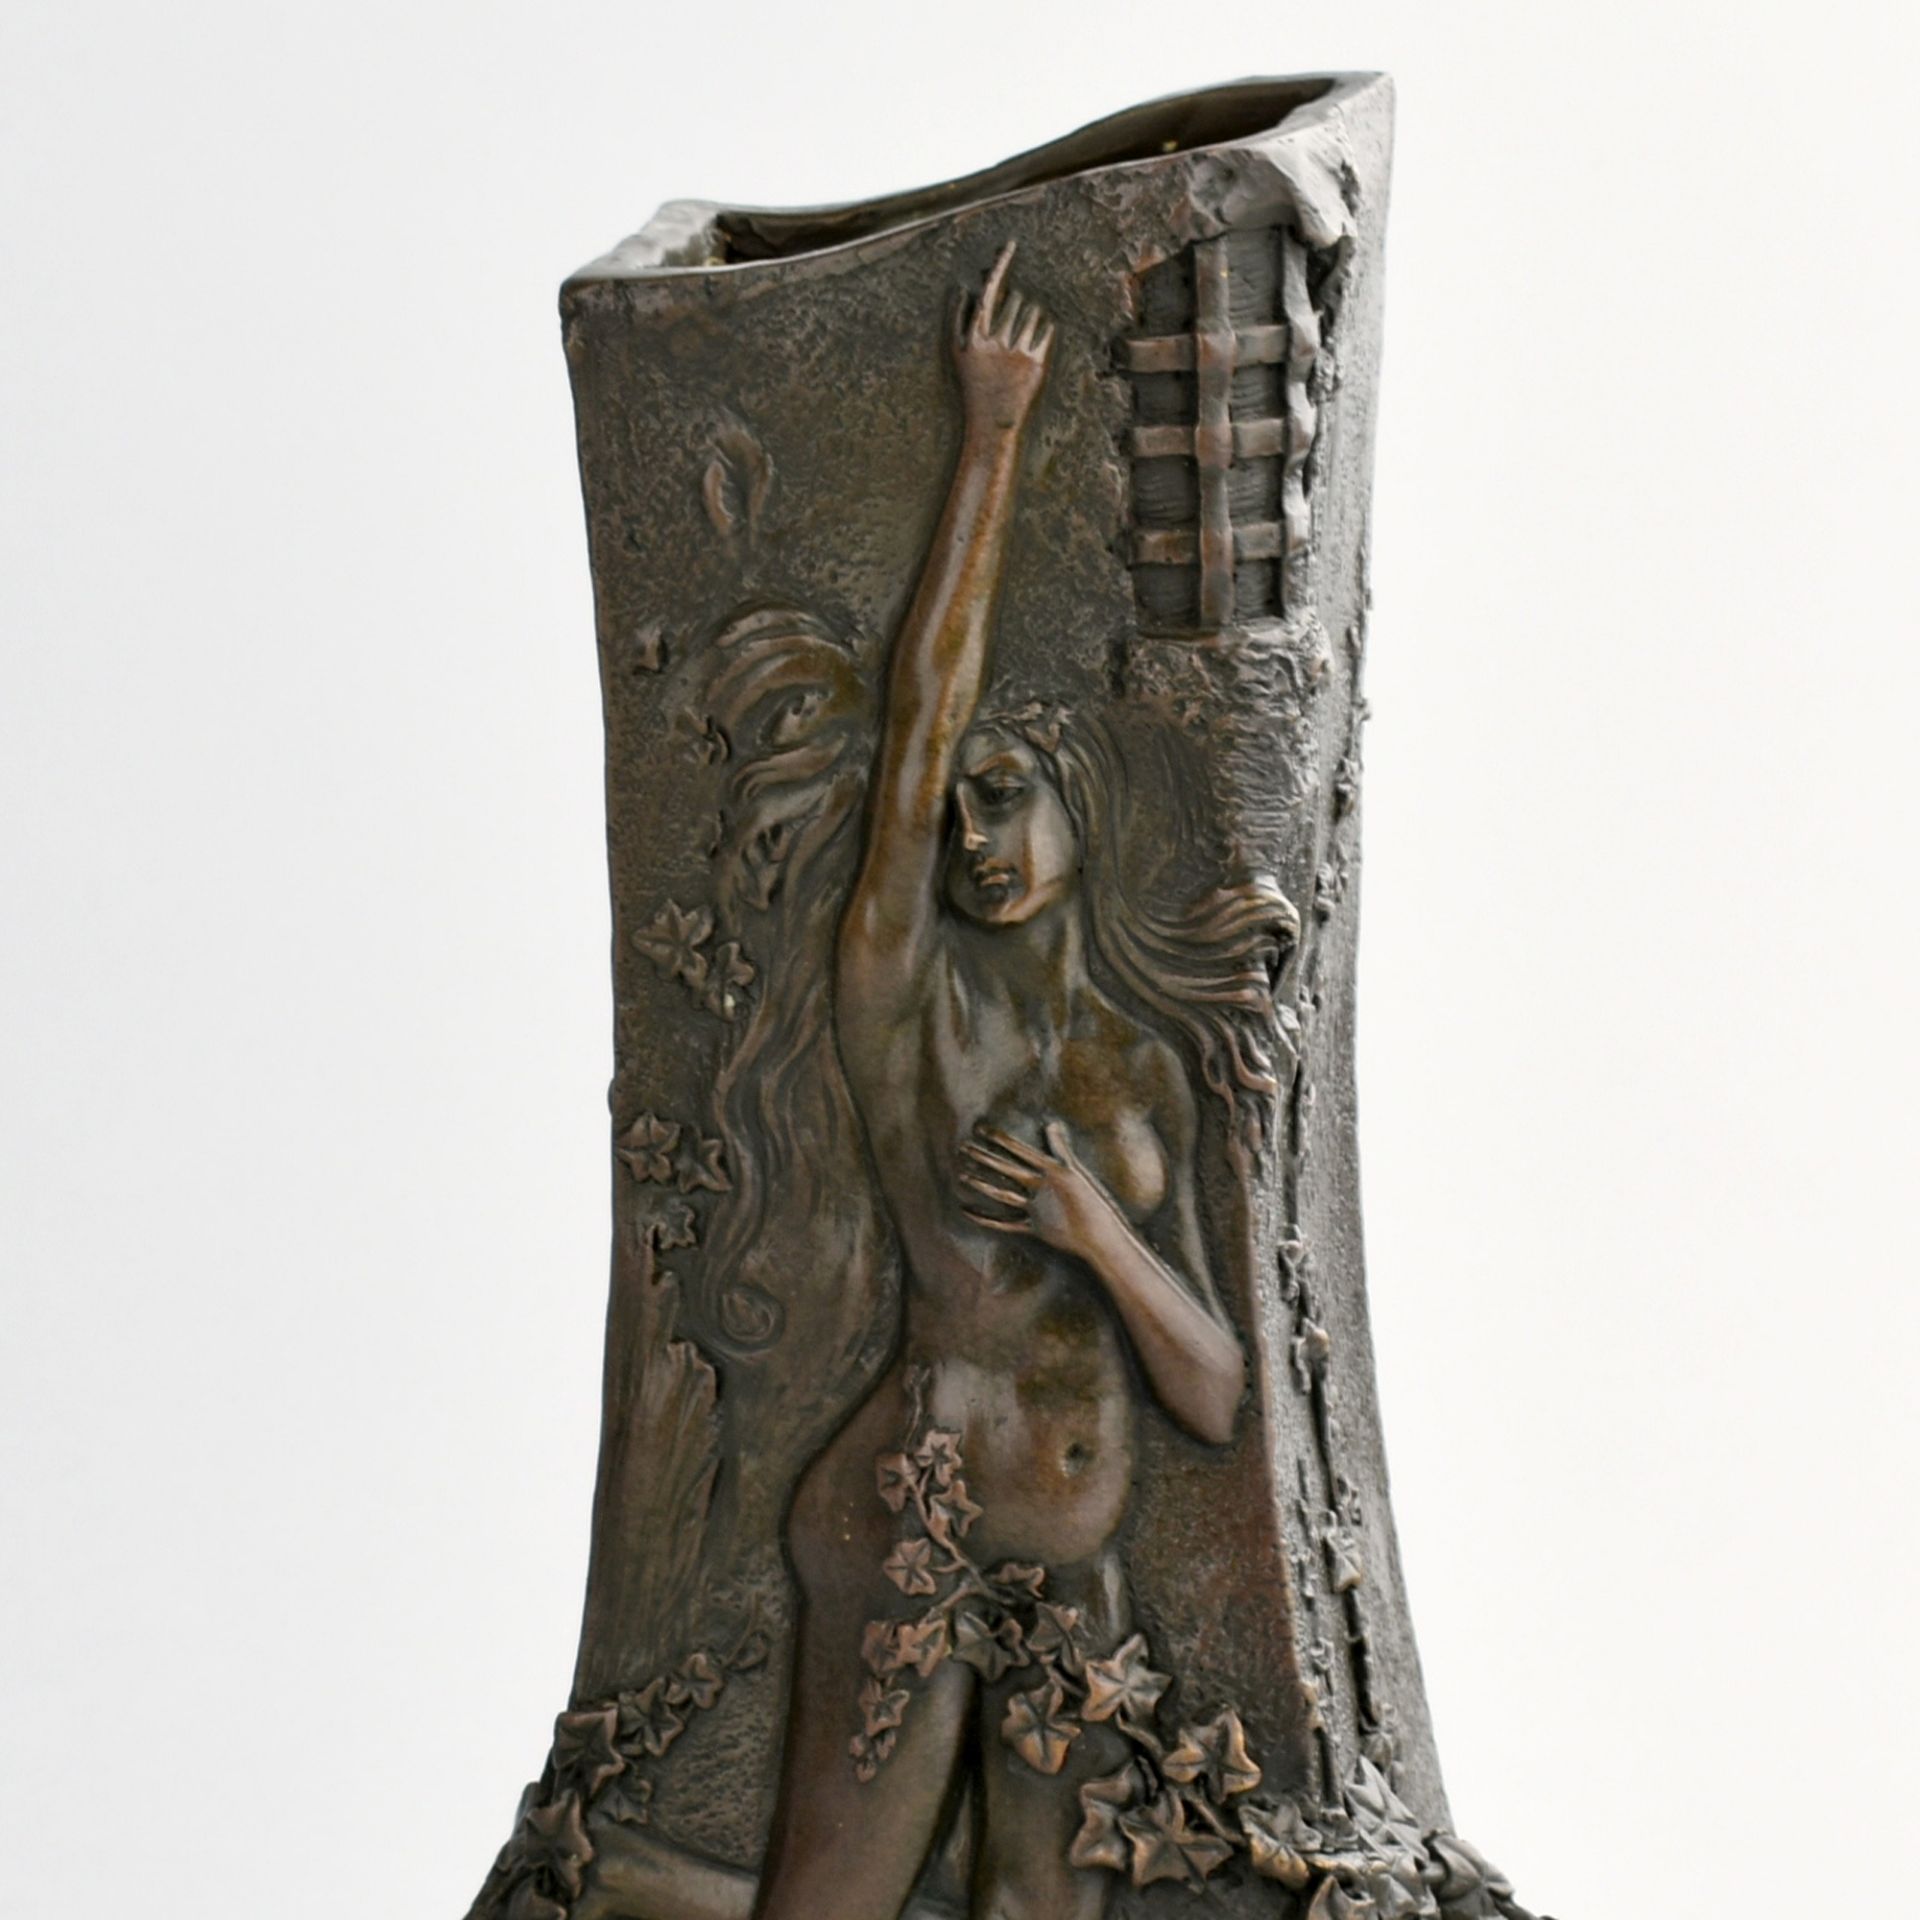 Bronzevase dunkelbraun patiniert, rechteckige Grundform nach oben verjüngt, umlaufender Jugendstil-